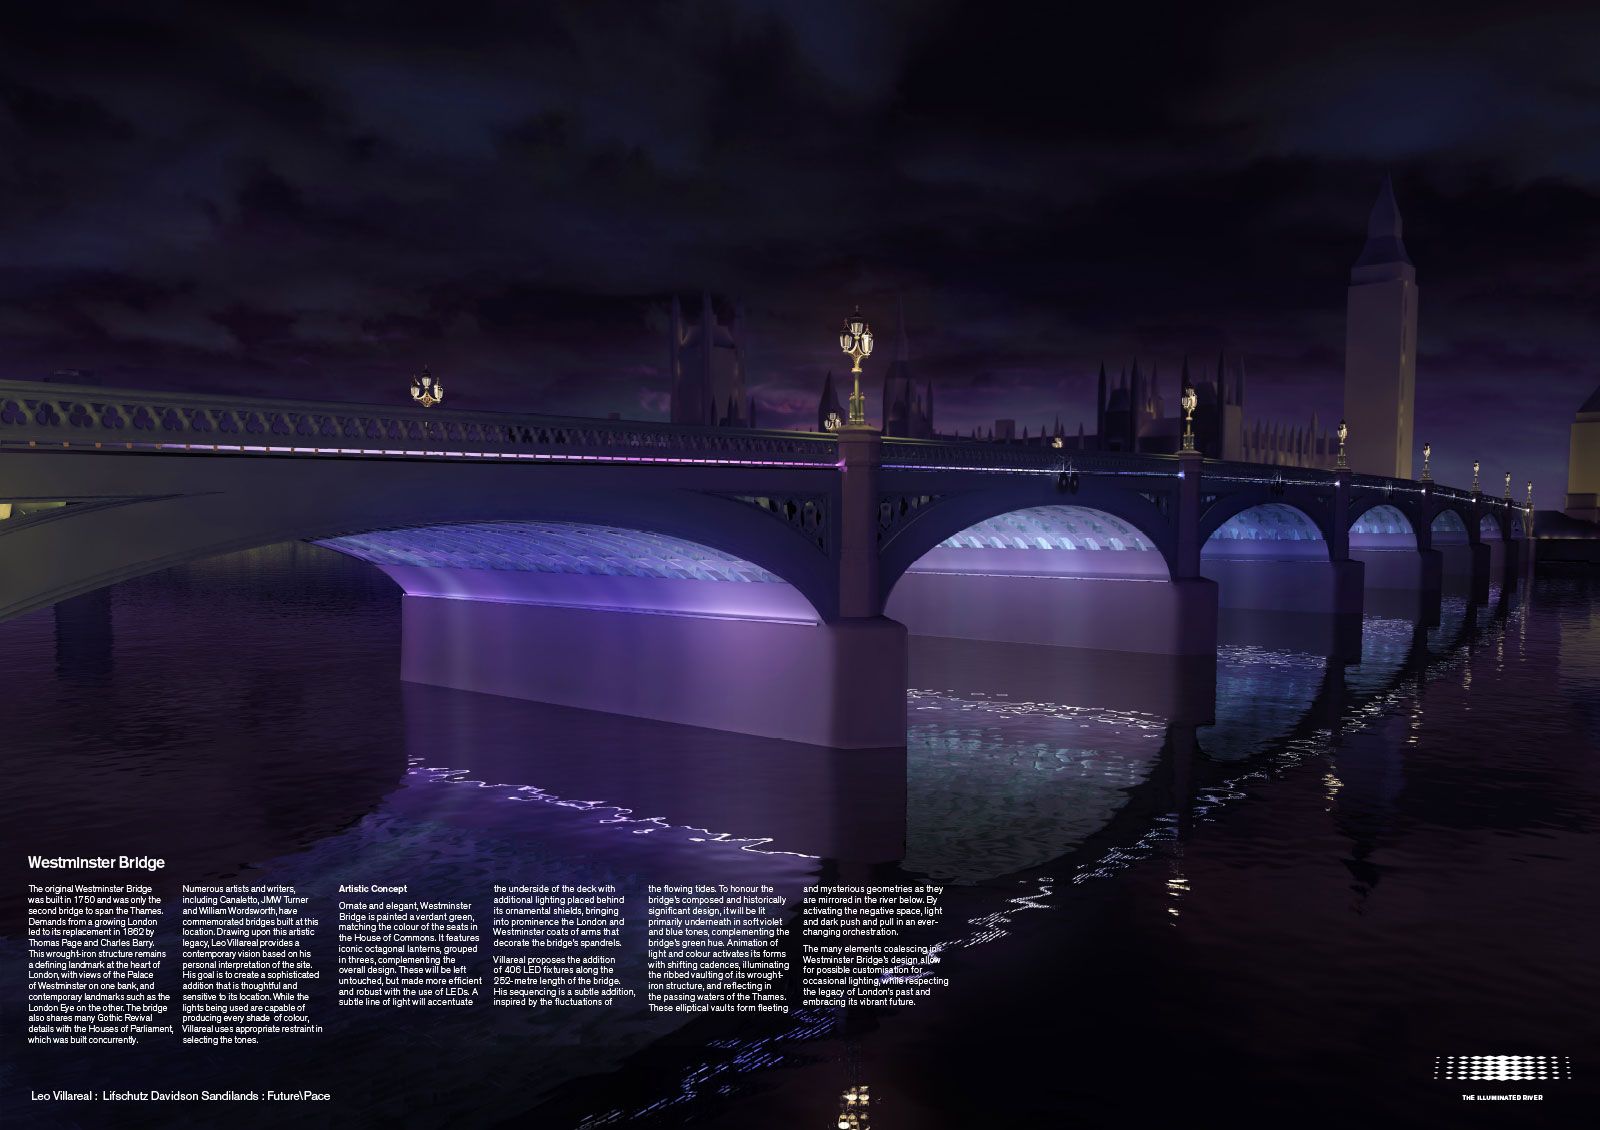 Illuminated River contest designs